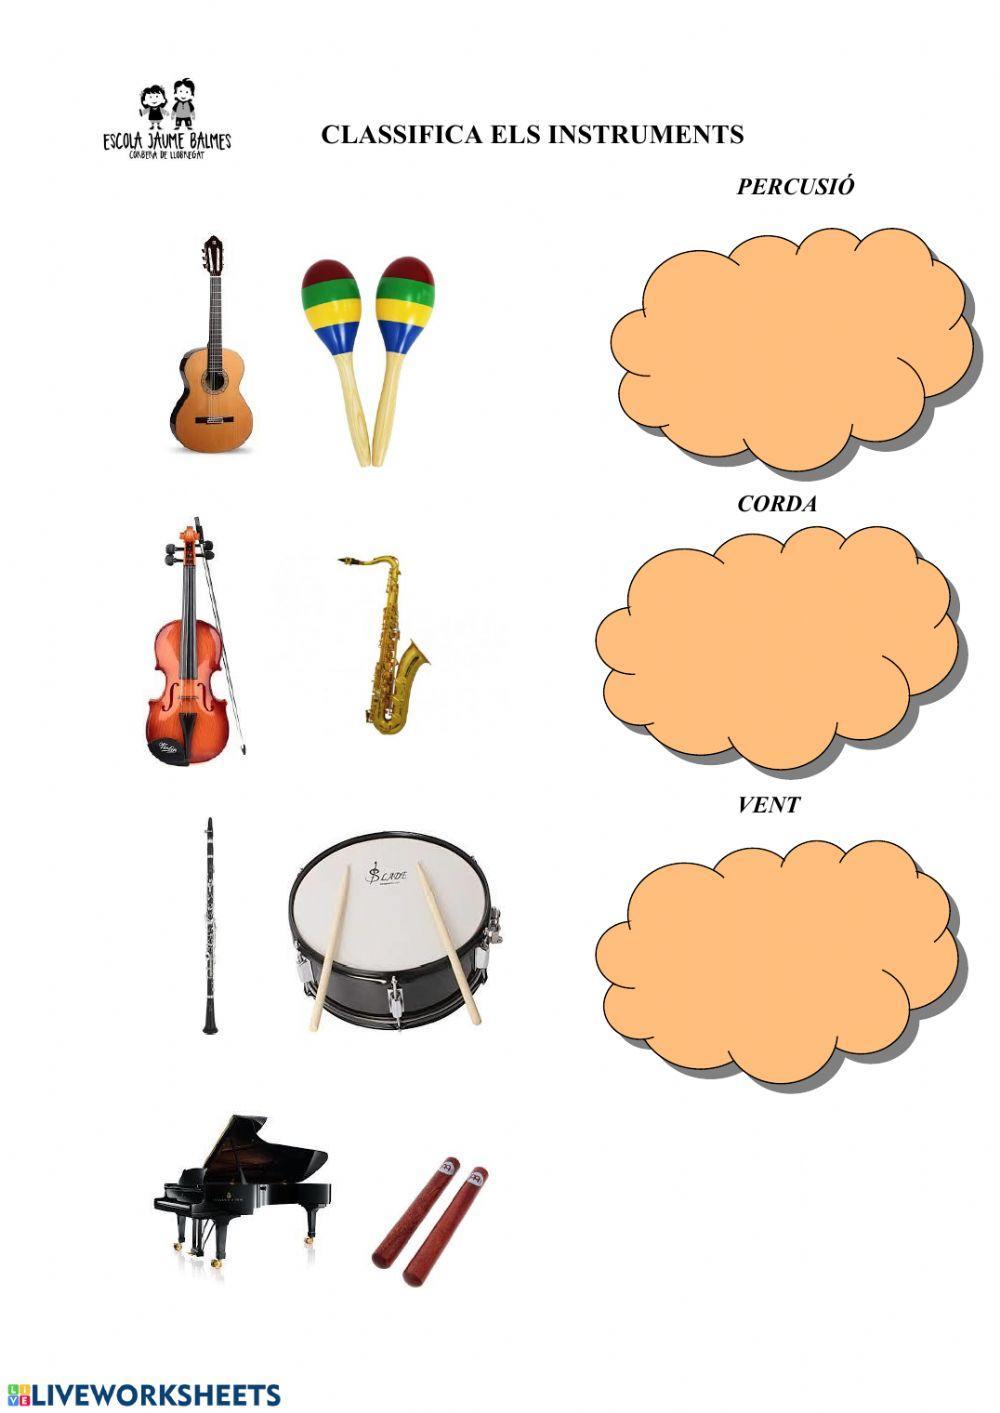 Classifica els instruments